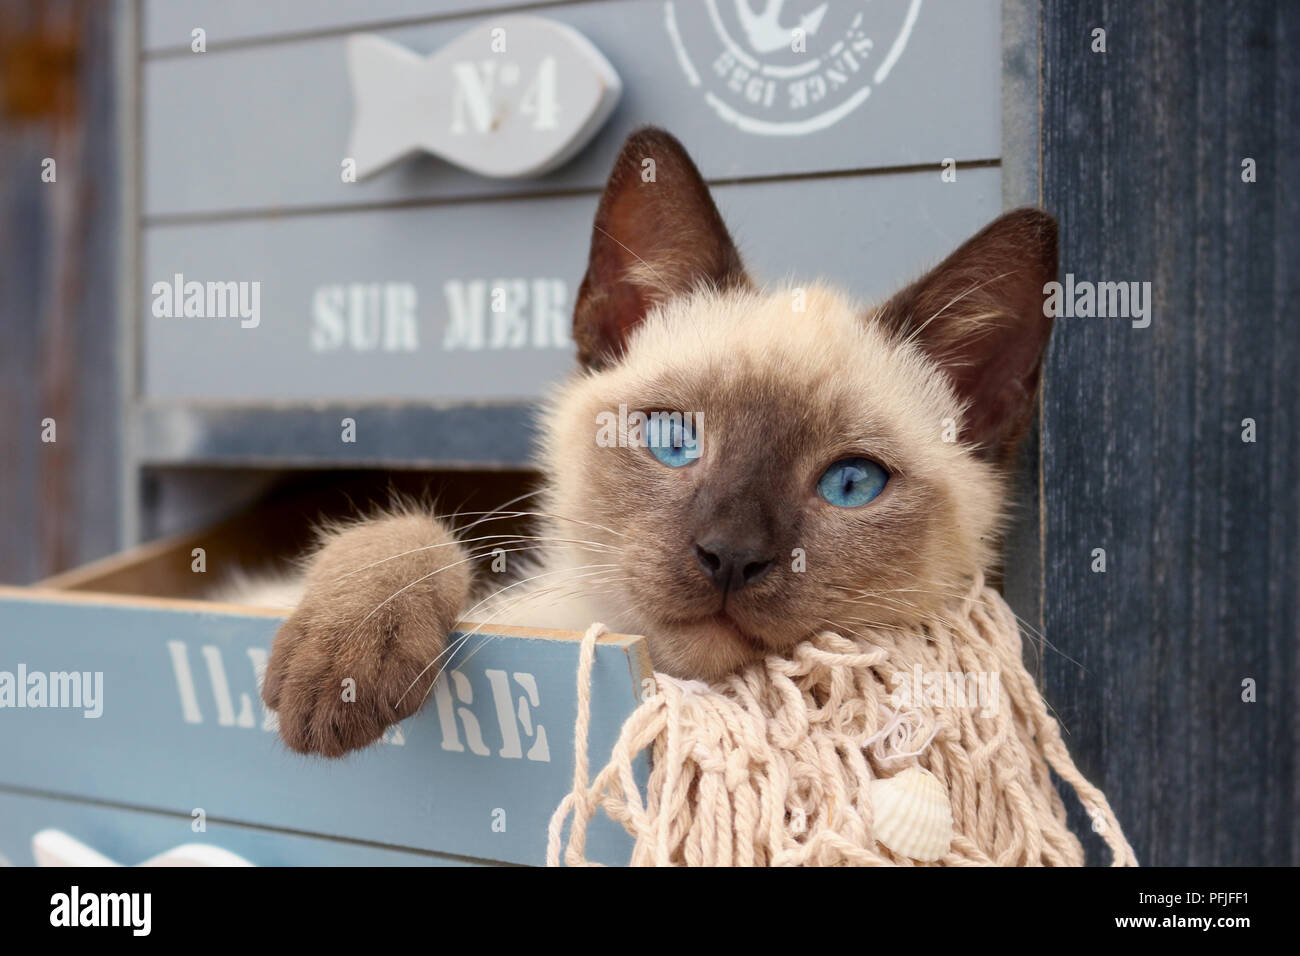 Siamese gattino, tailandese, 10 settimane di età, giacente in un cassetto di un armadio Foto Stock